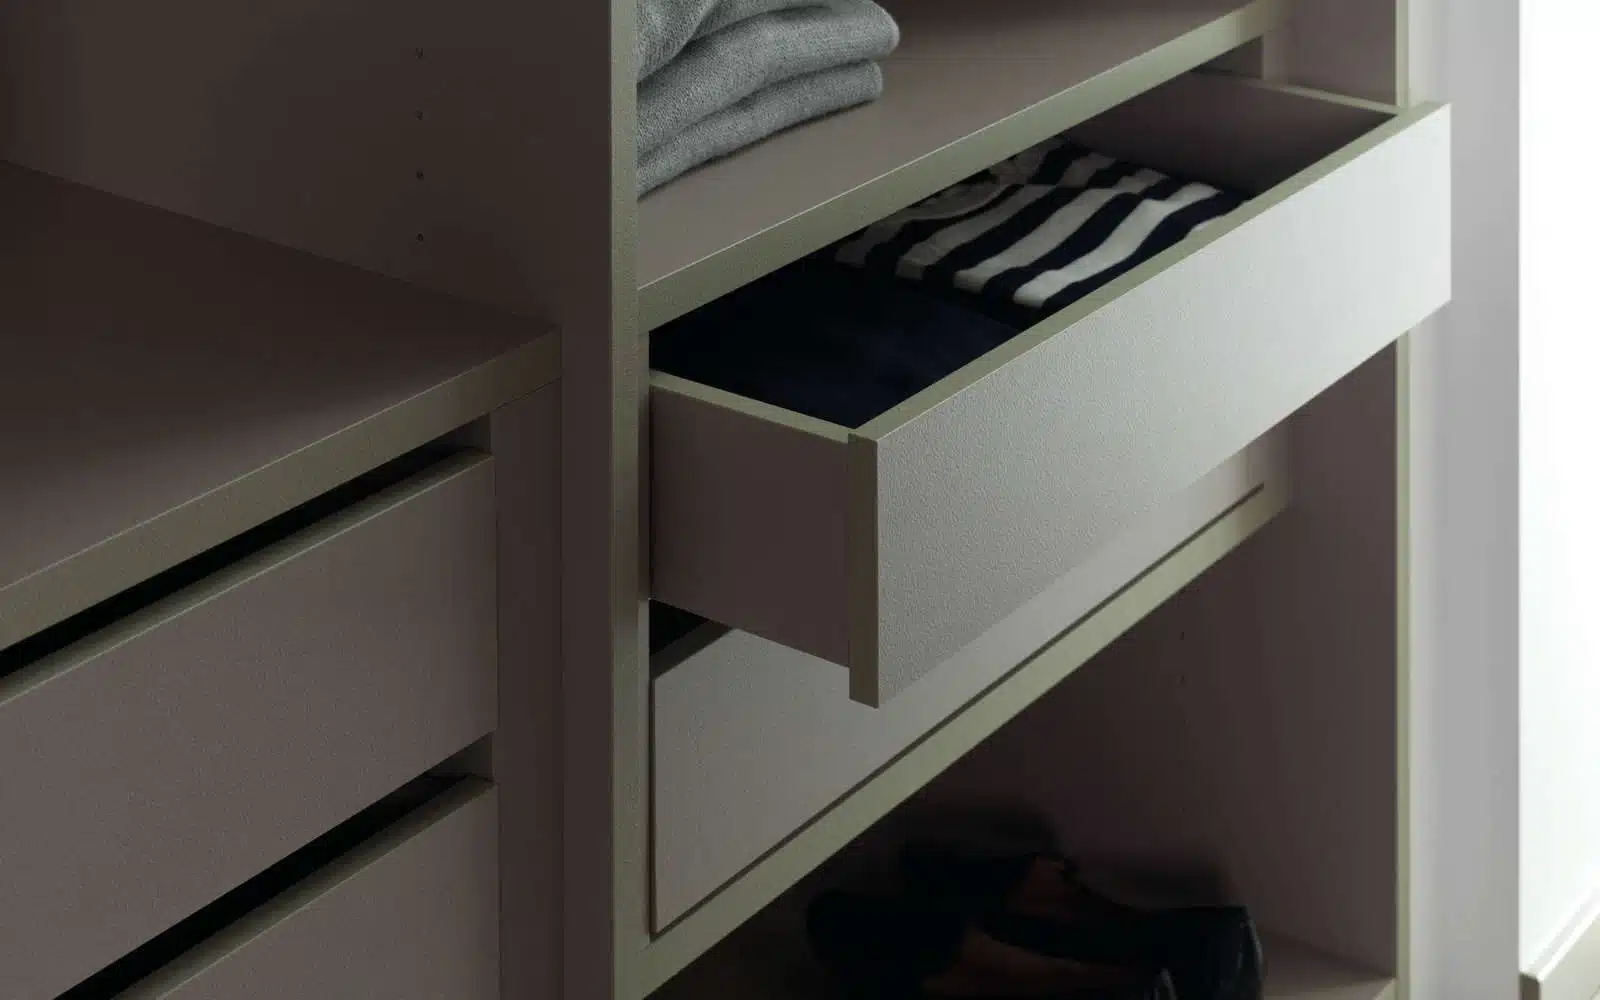 Et billede af en garderobe i grå laminat med to skydedøre og en hængestang til tøj. Garderoben har en enkel og moderne stil med rene linjer og en glat overflade